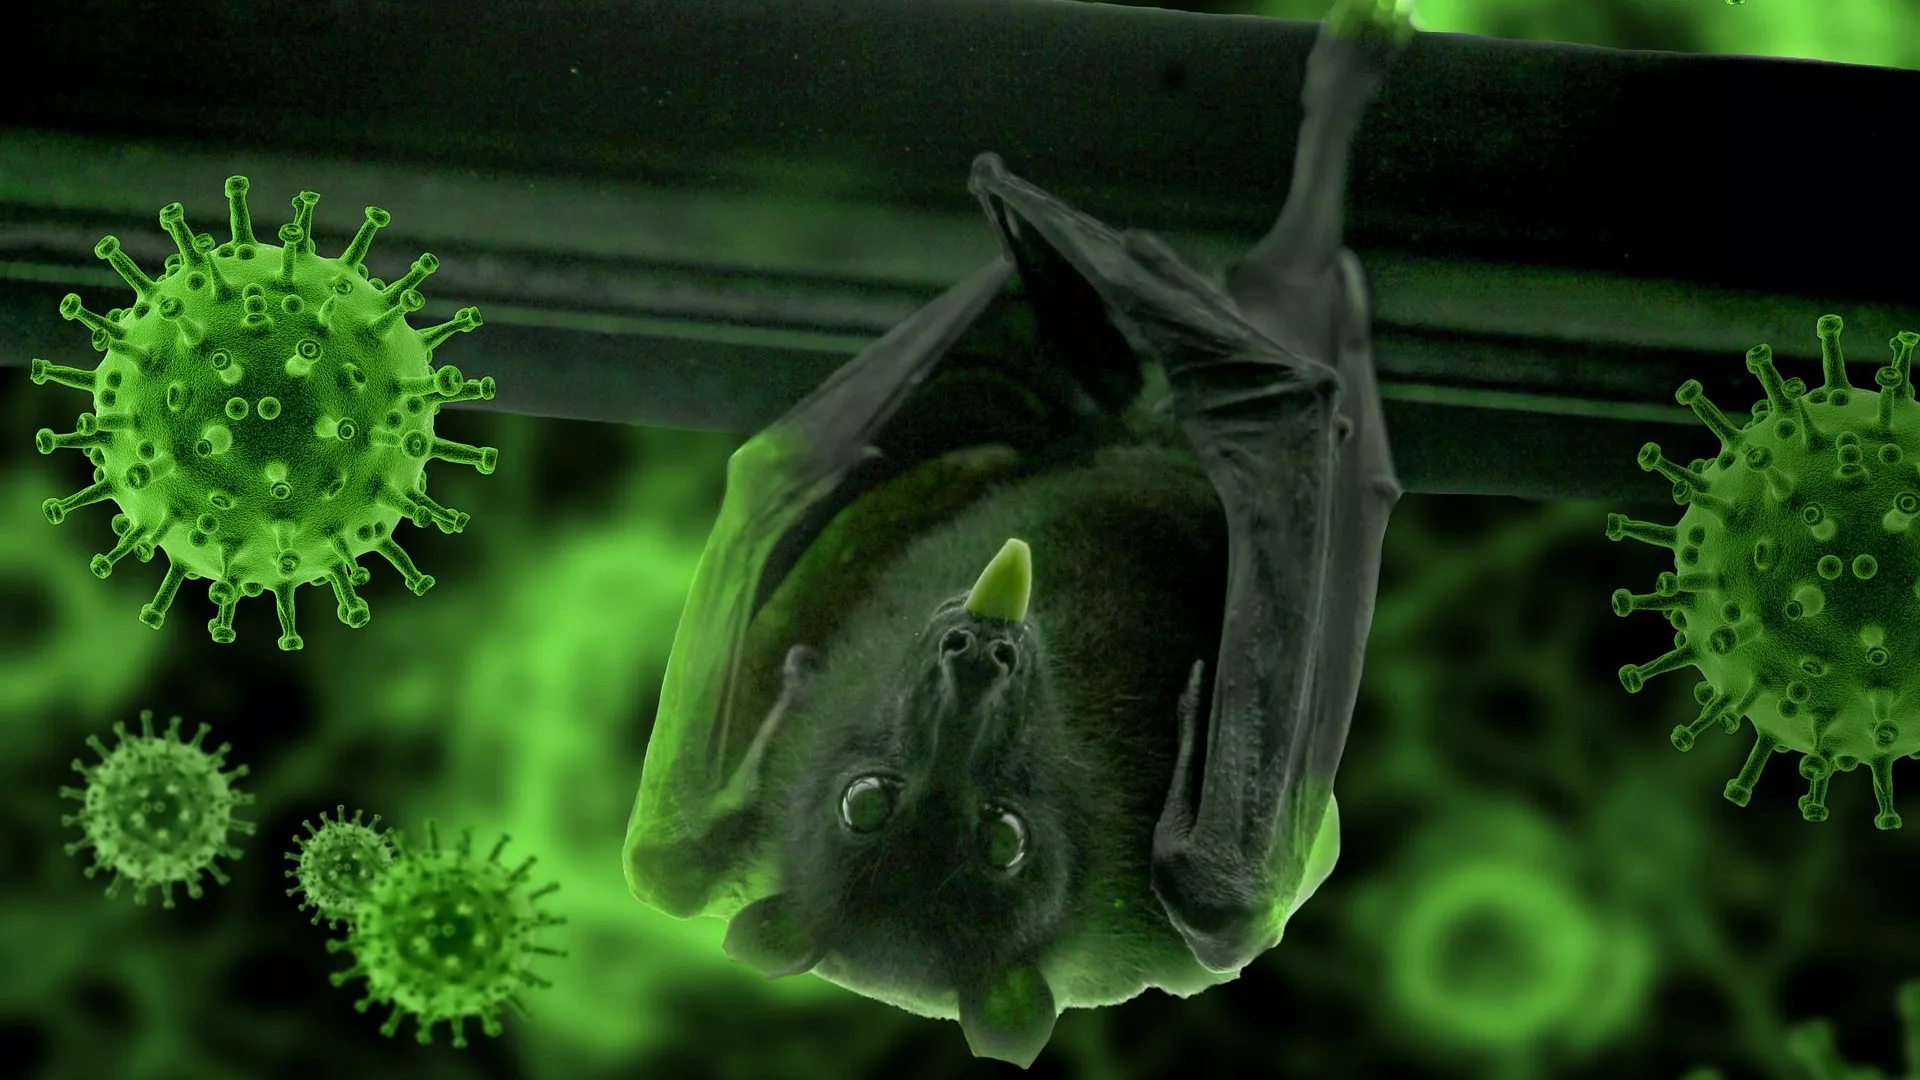  Científicos de China y Australia hallan 5 nuevos virus de murciélagos cercanos al COVID-19